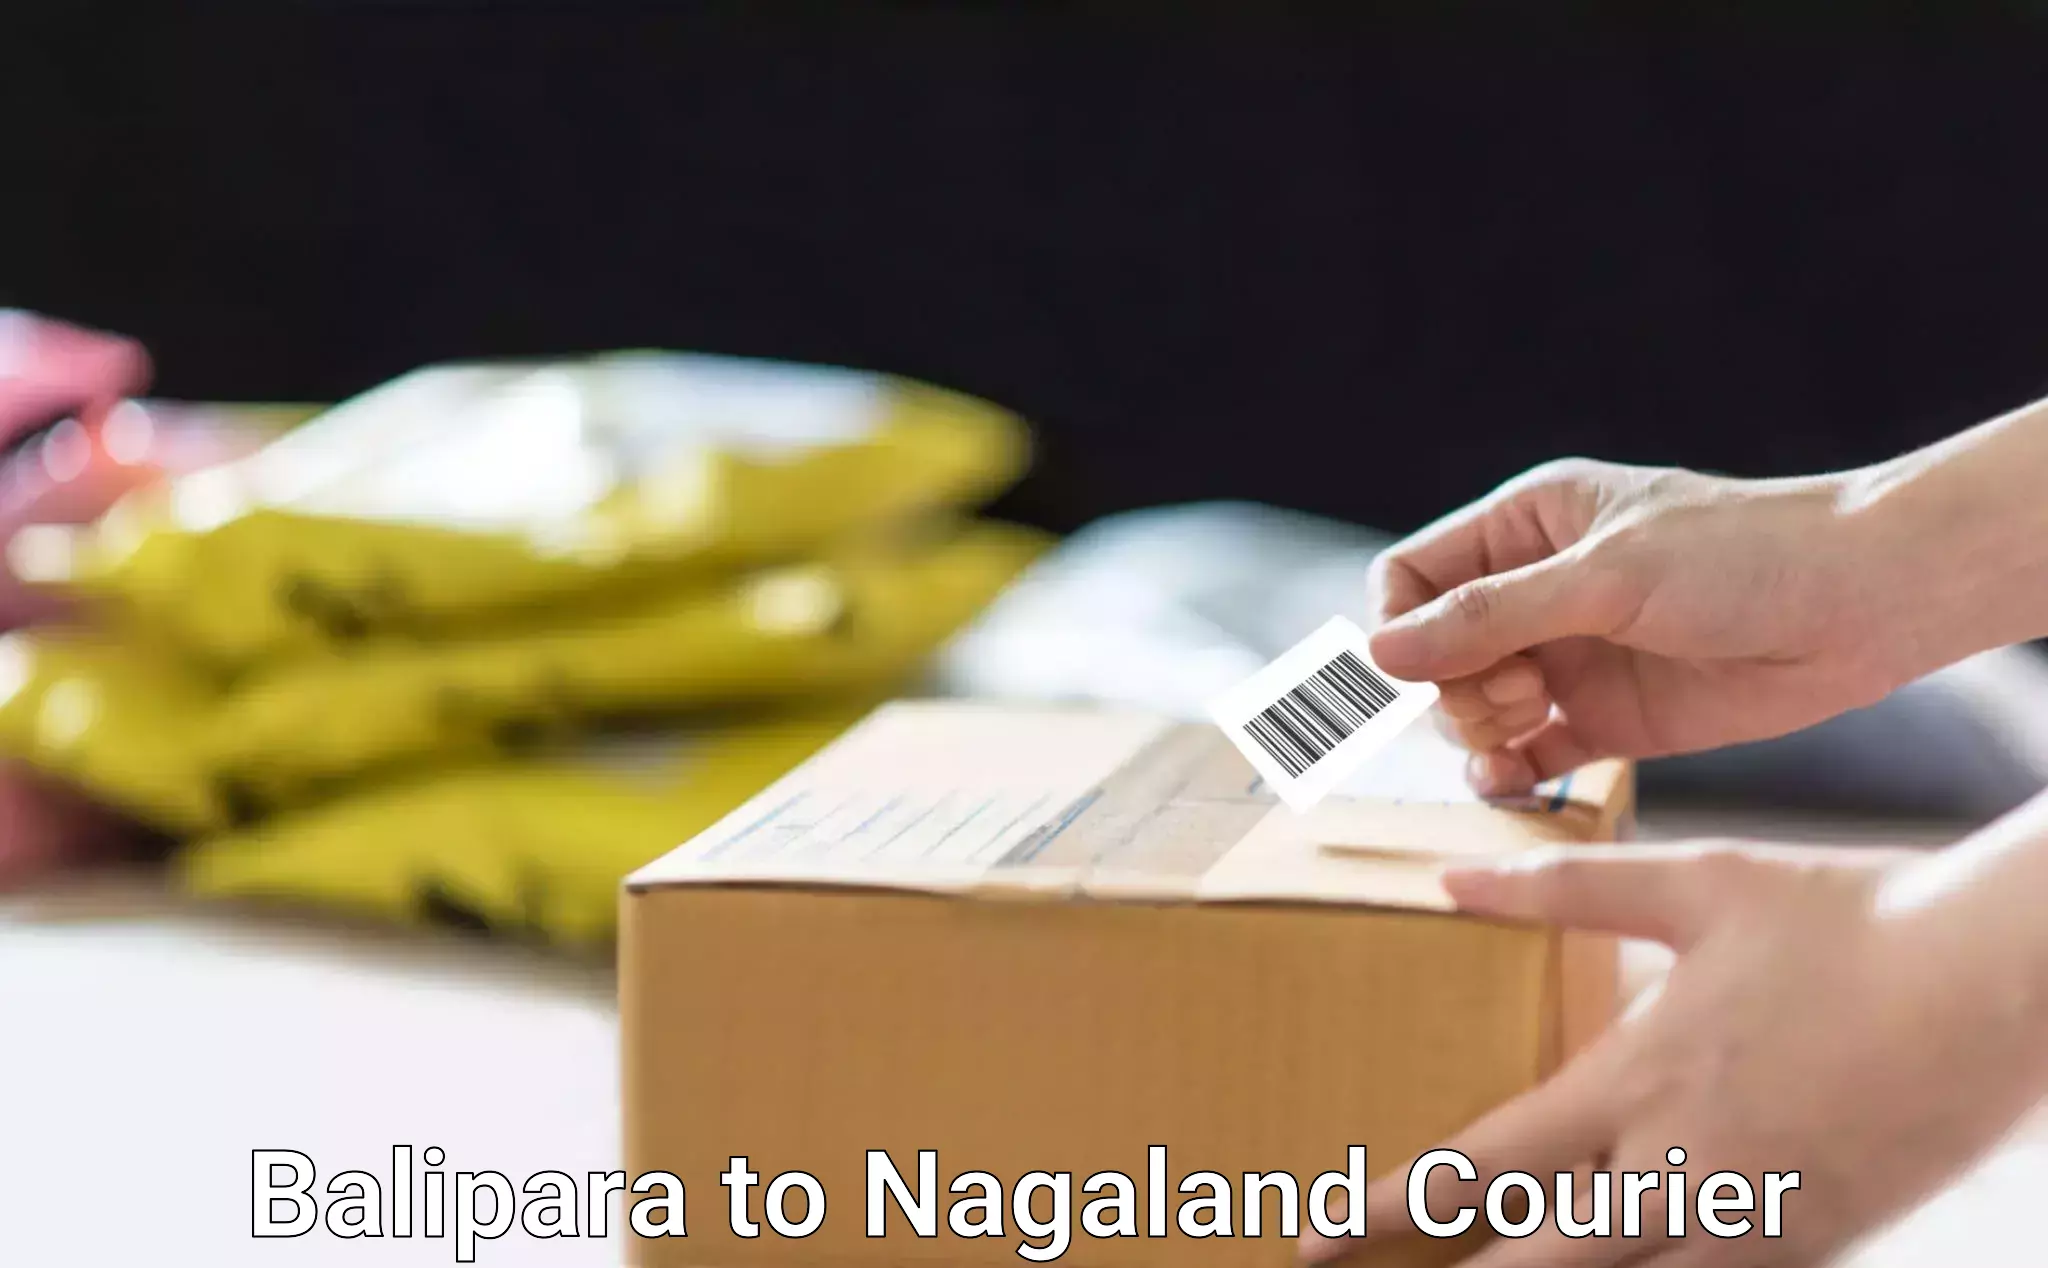 Advanced shipping technology Balipara to Nagaland